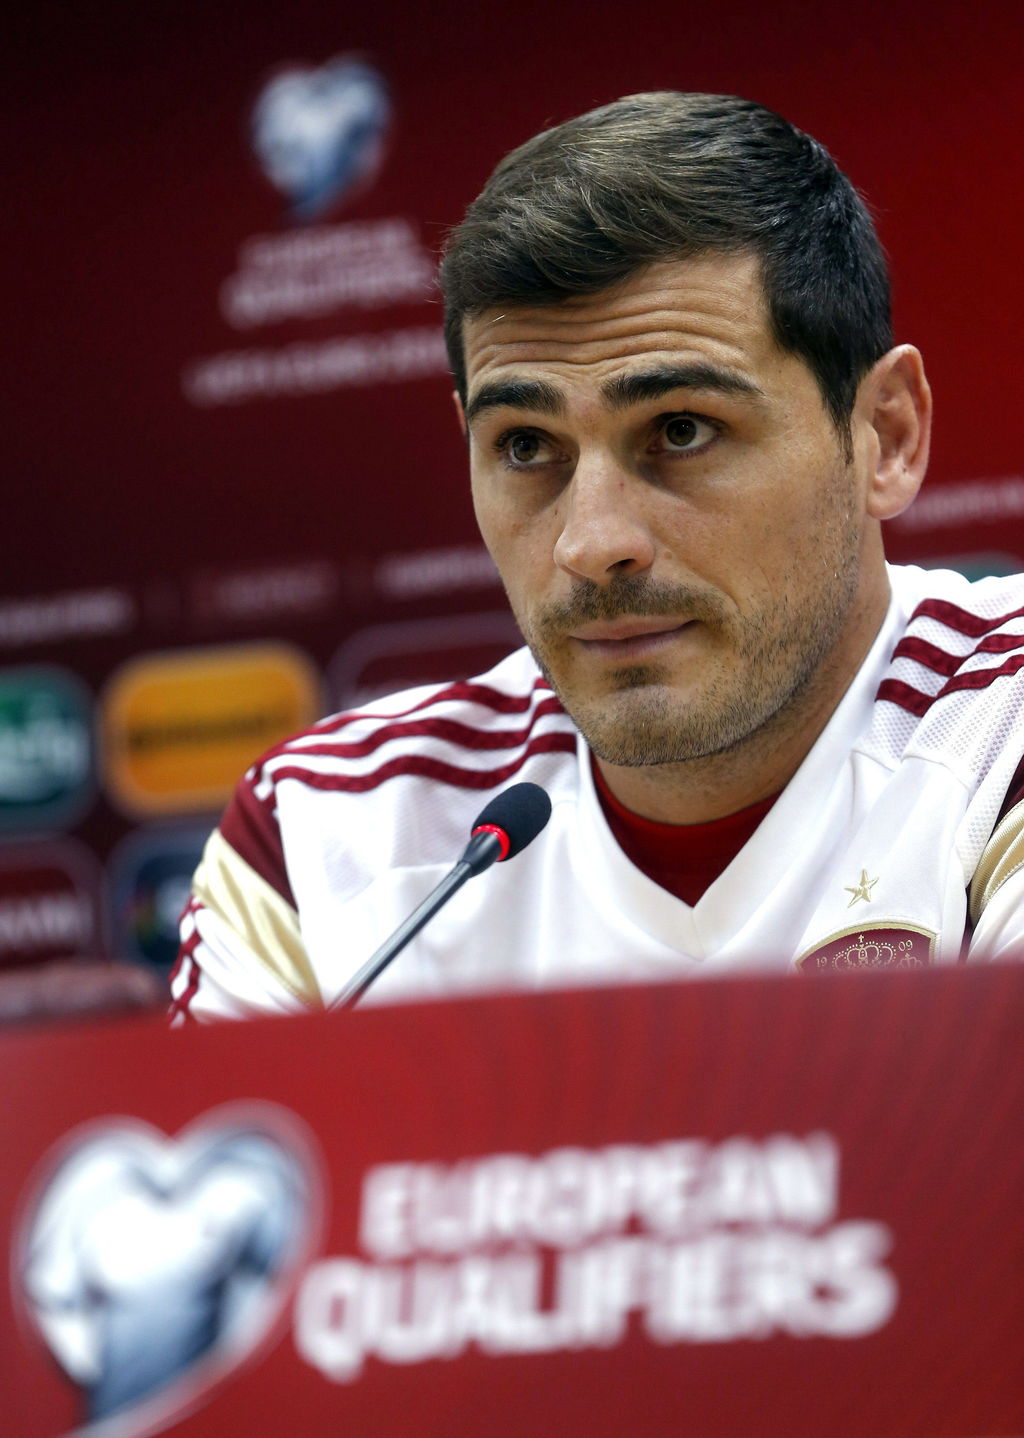 'Estoy feliz por capitanear cien veces a la selección. Ojalá venga muchas más y pueda seguir representando a España', añadió Casillas. (EFE)